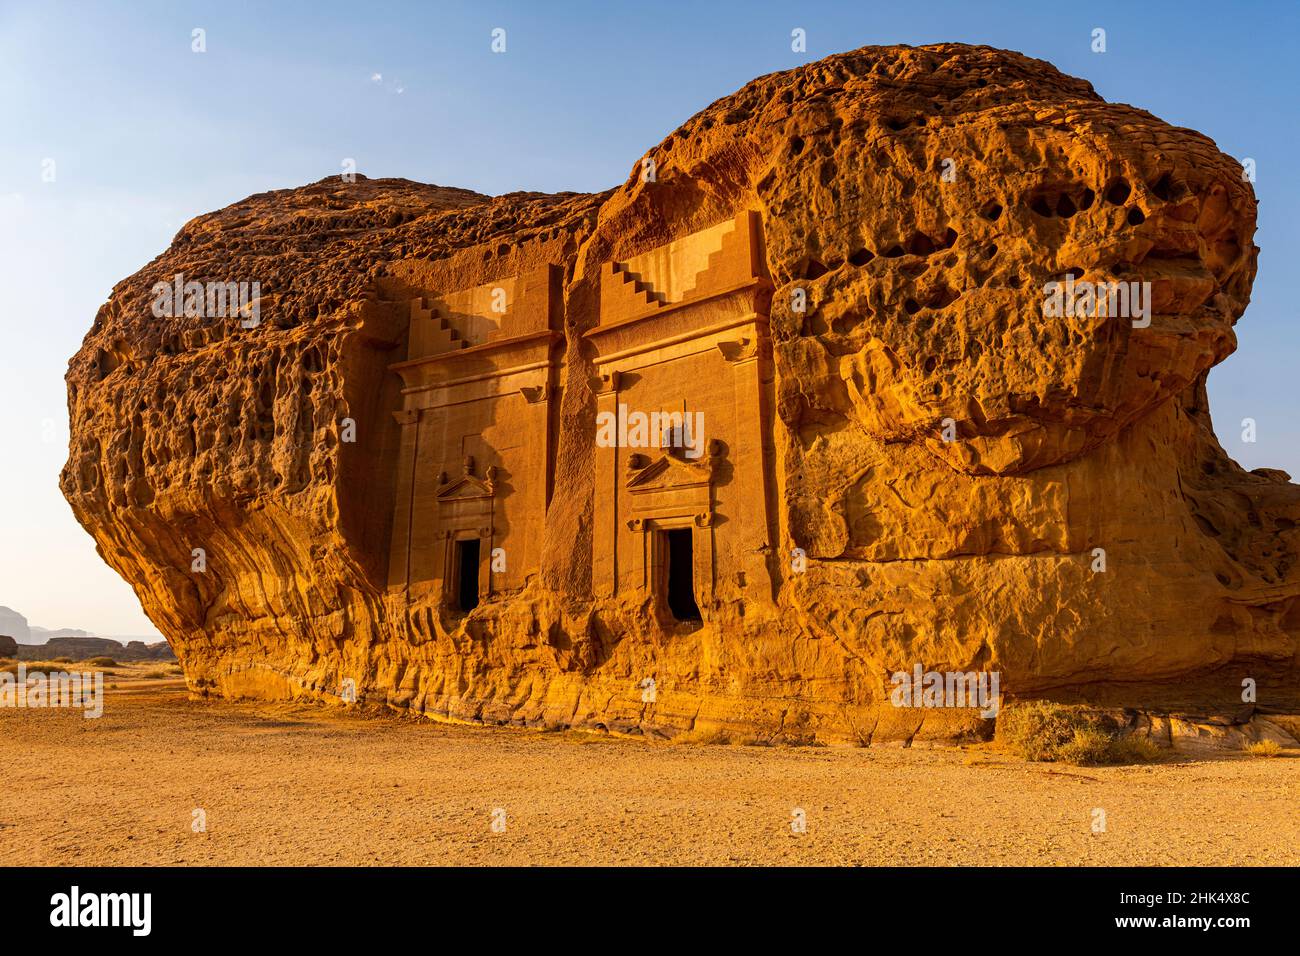 Tombe de roche, Madain Saleh (Hegra) (Al Hijr), site du patrimoine mondial de l'UNESCO, Al Ula, Royaume d'Arabie Saoudite, Moyen-Orient Banque D'Images